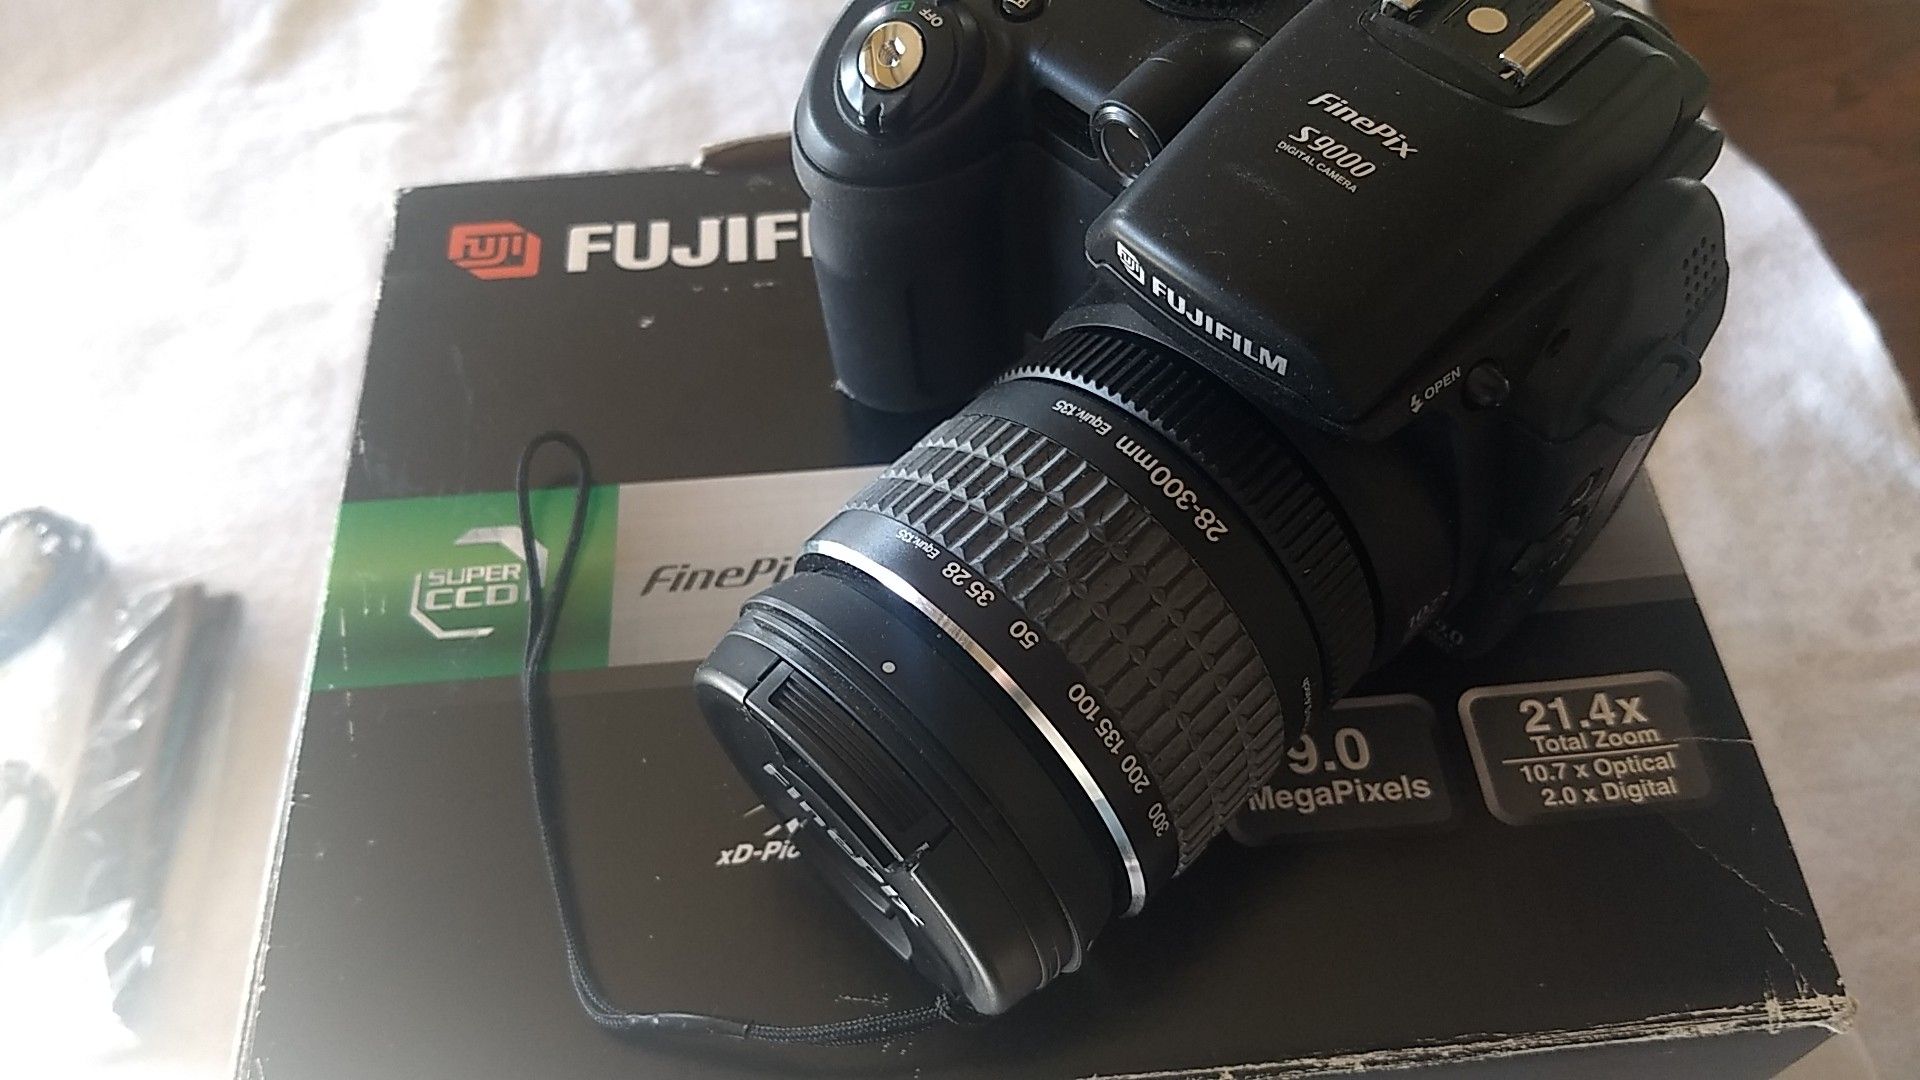 Fuji Finepix 9000 Digital SLR 9.0 MP New